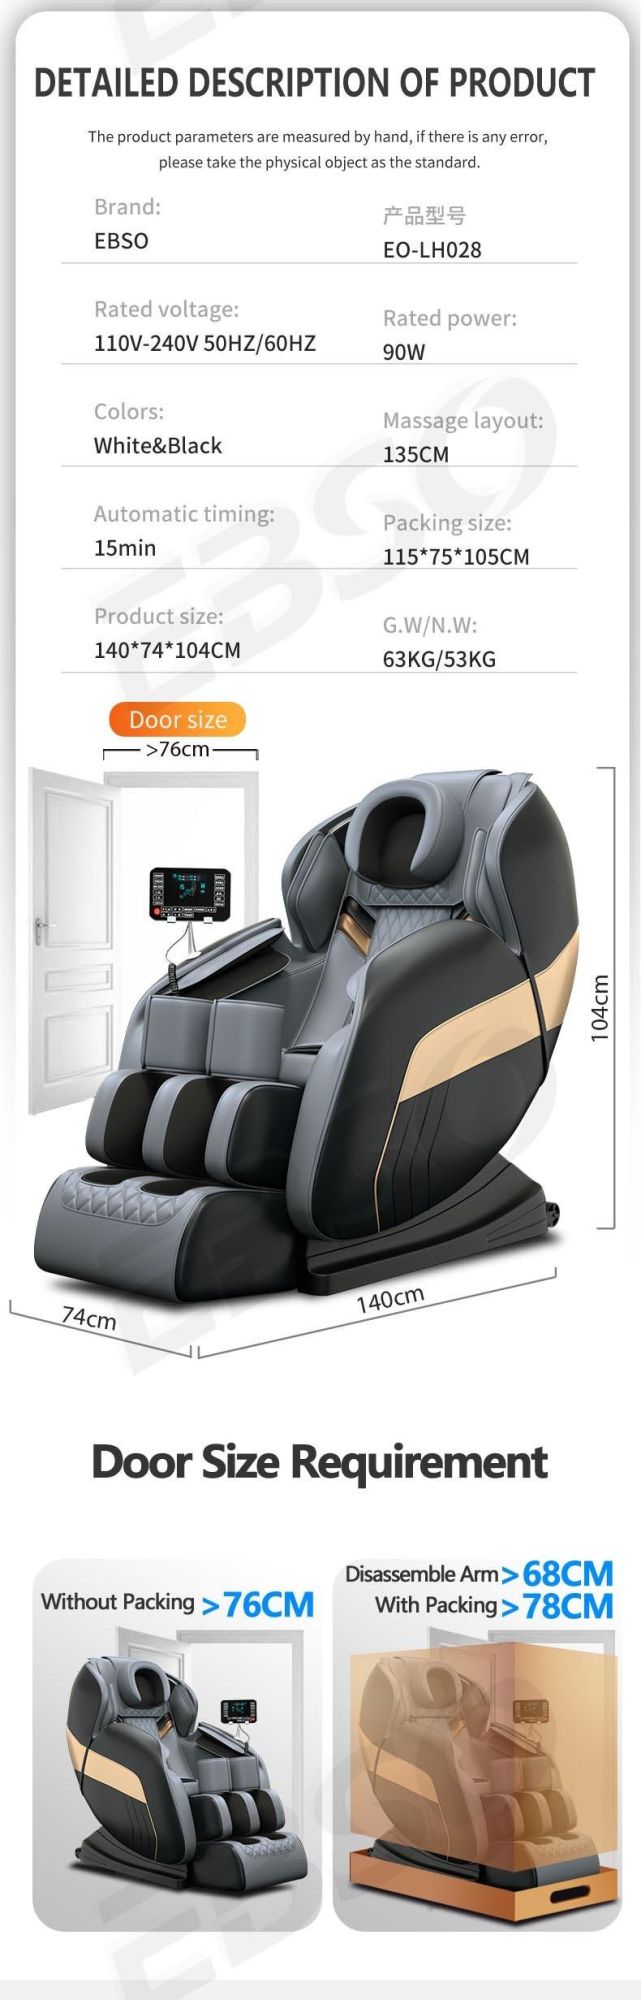 U Type Pillow Latest Full Body Massage Chair 2022 Pain Massage Equipment Zero Gravity